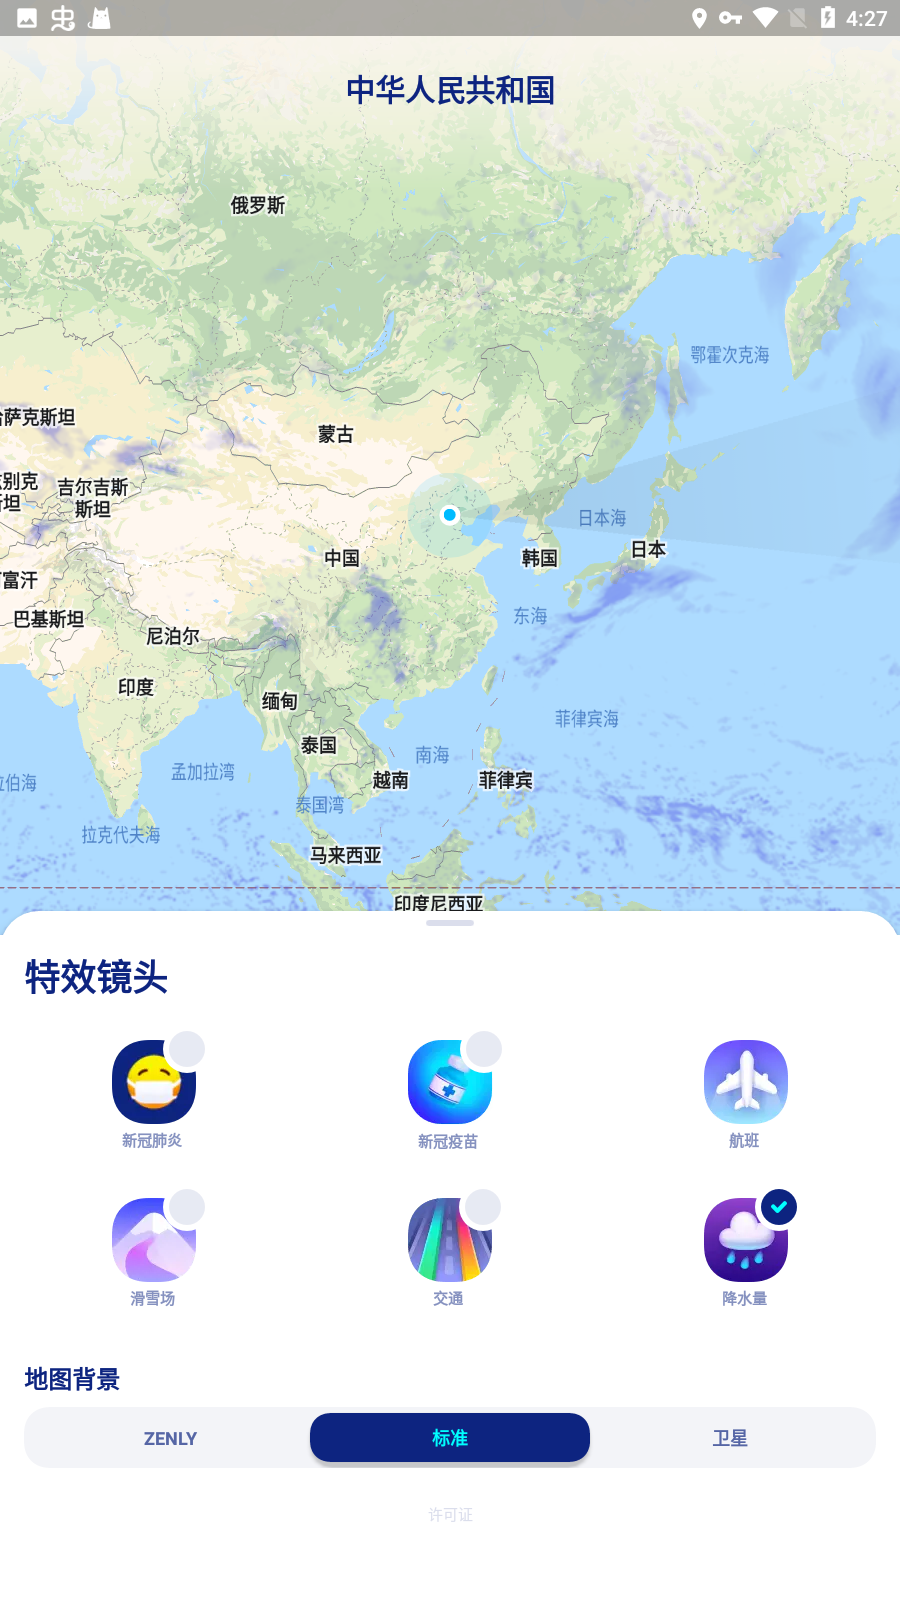 zenly中国版安卓版 v5.0.4 安卓版 1